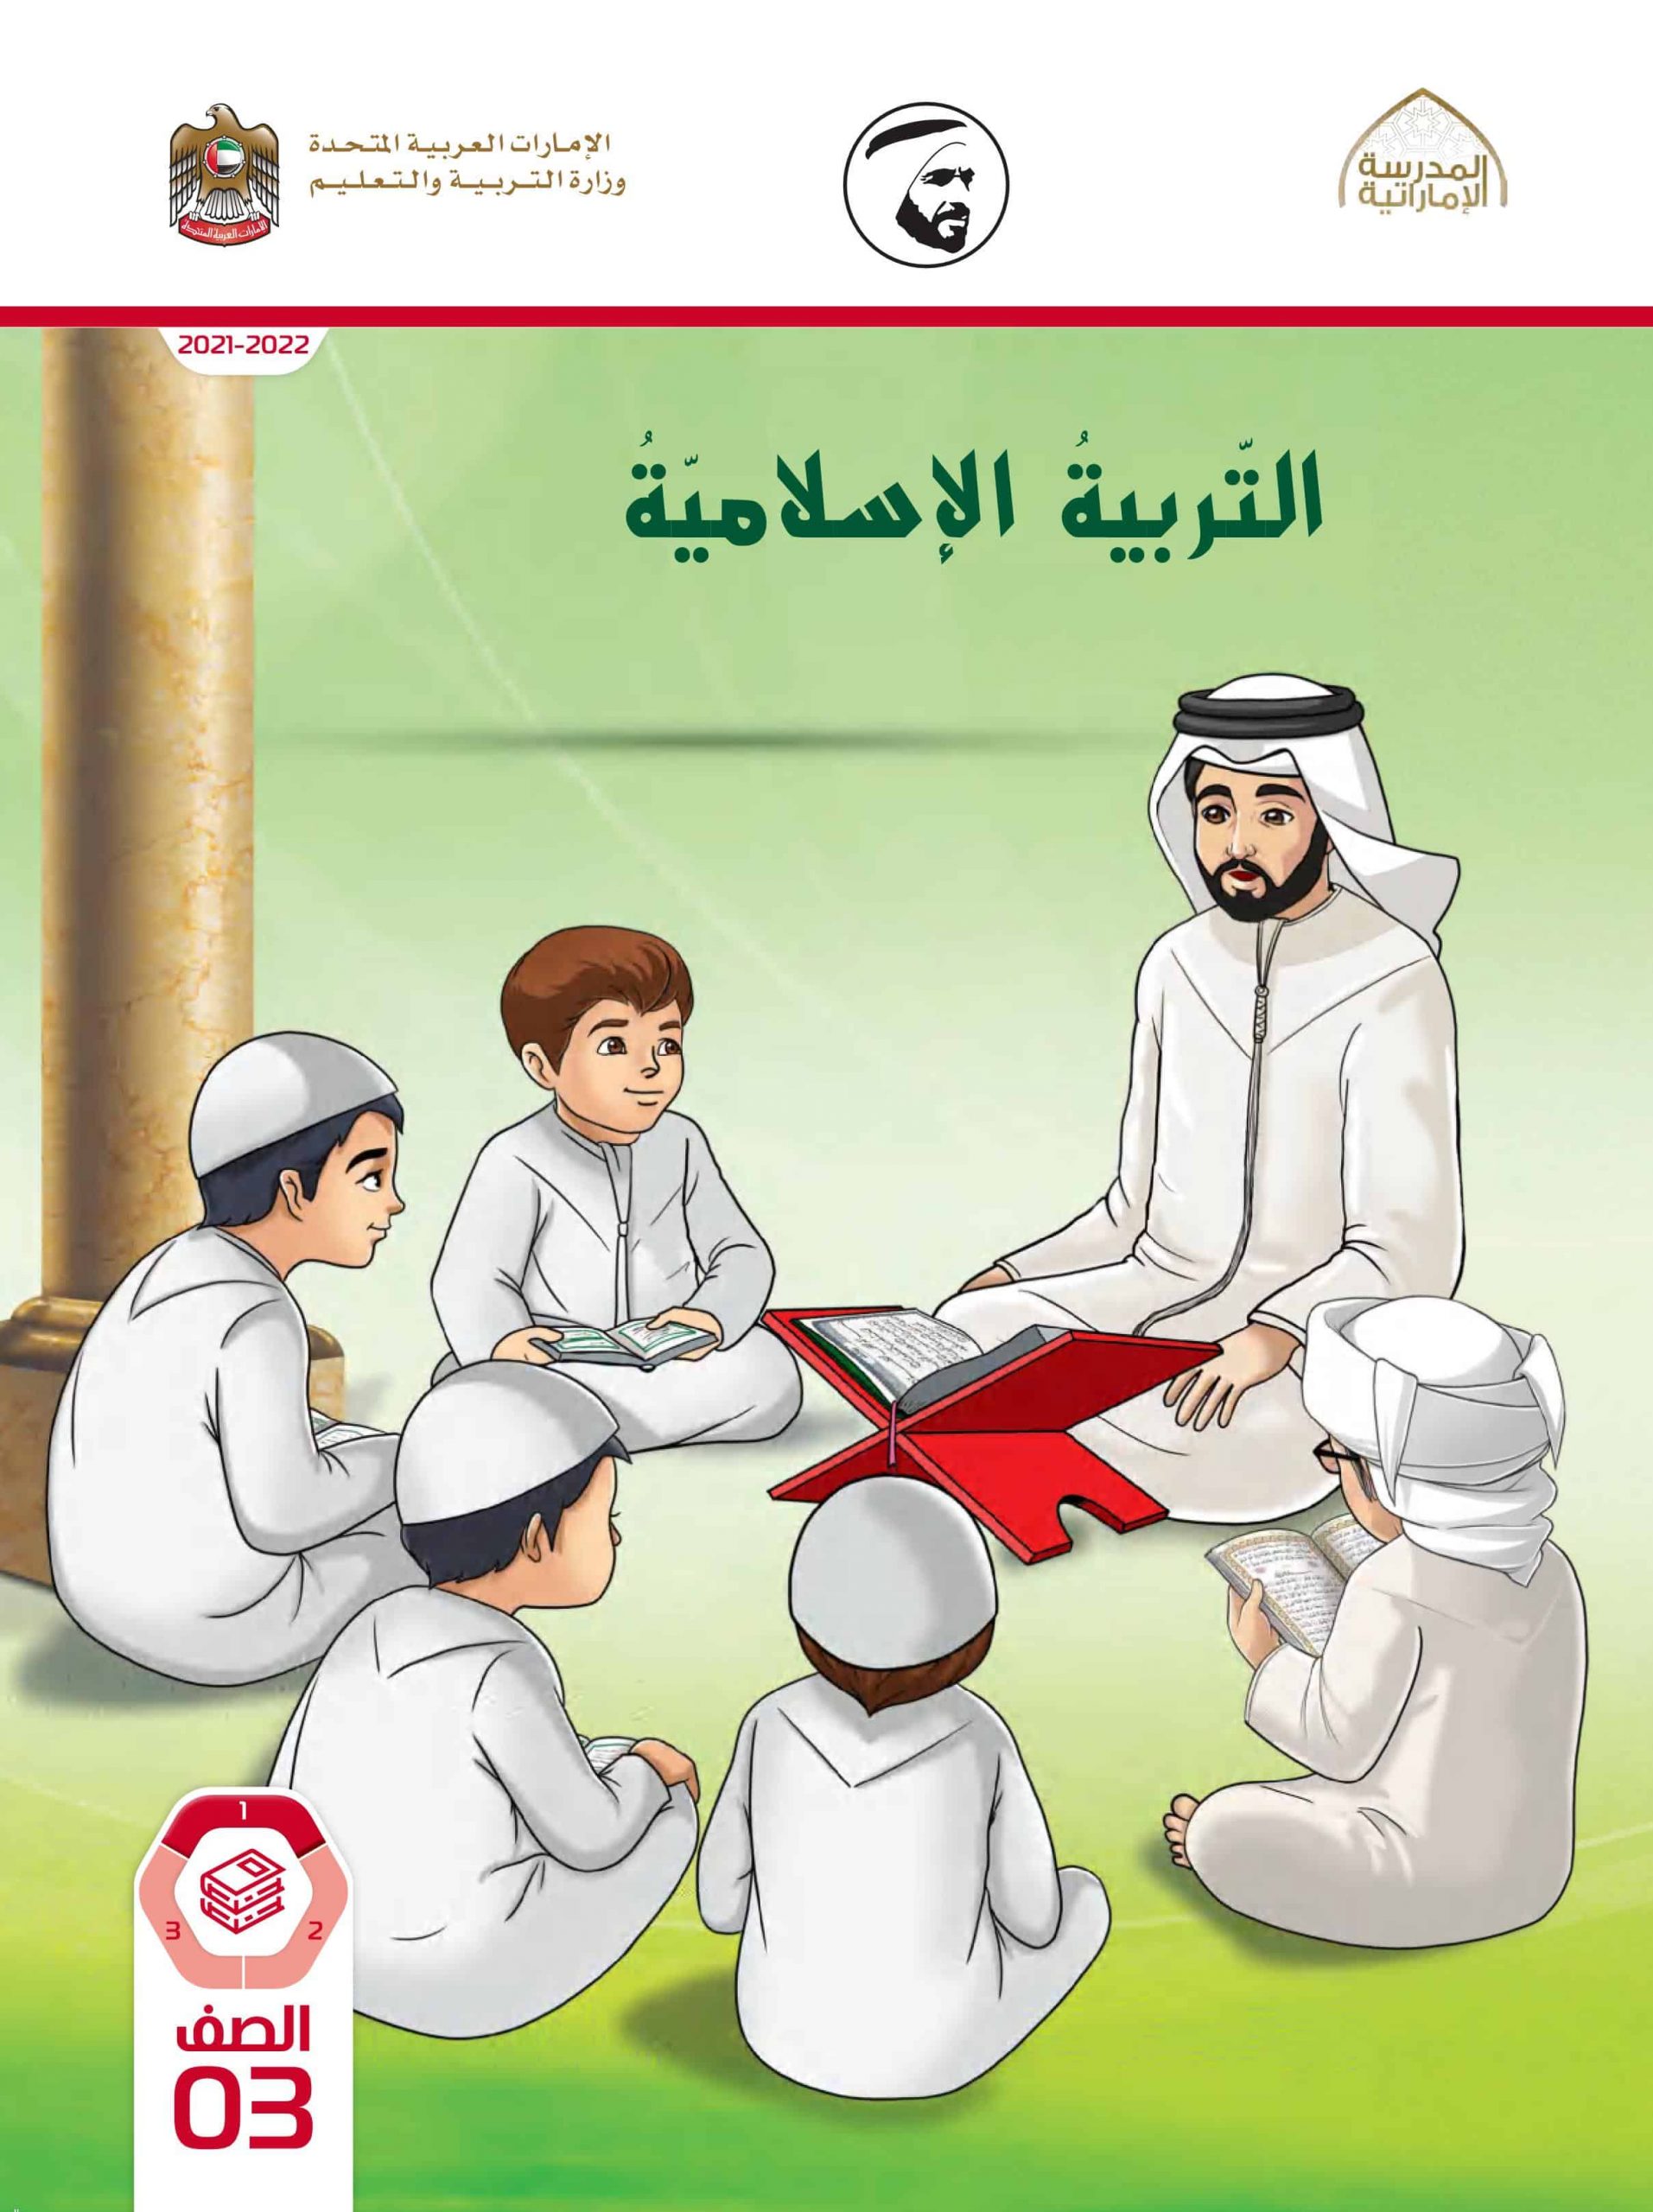 كتاب الطالب الفصل الدراسي الأول 2021-2022 الصف الثالث مادة التربية الإسلامية